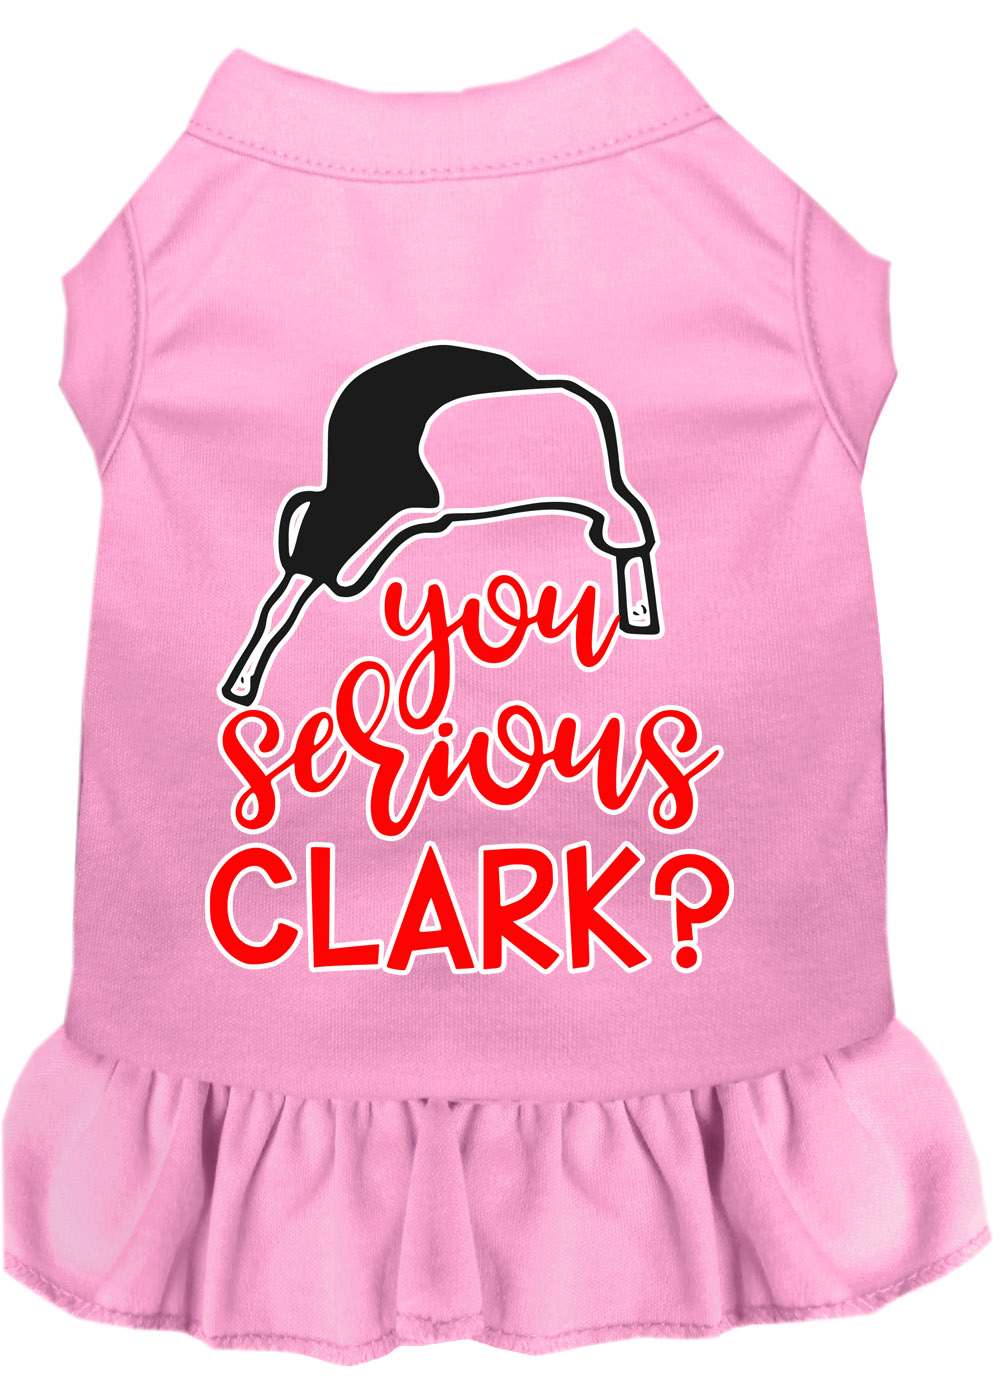 You Serious Clark? Screen Print Dog Dress Light Pink Lg